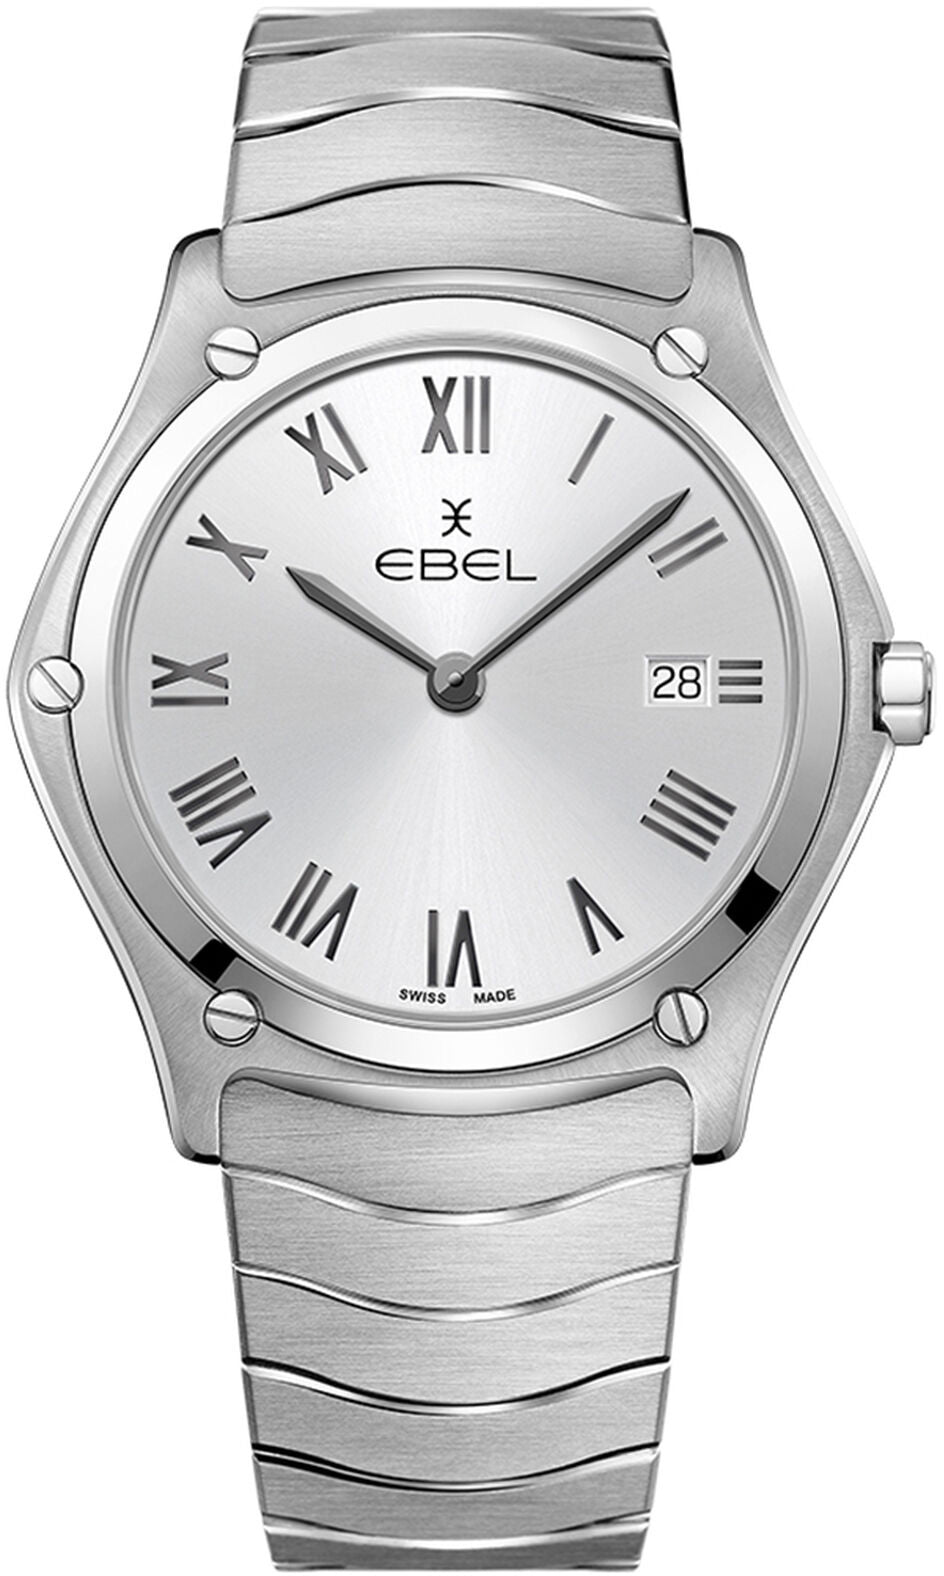 Photos - Wrist Watch Ebel Watch Sport Classic EBL-271 